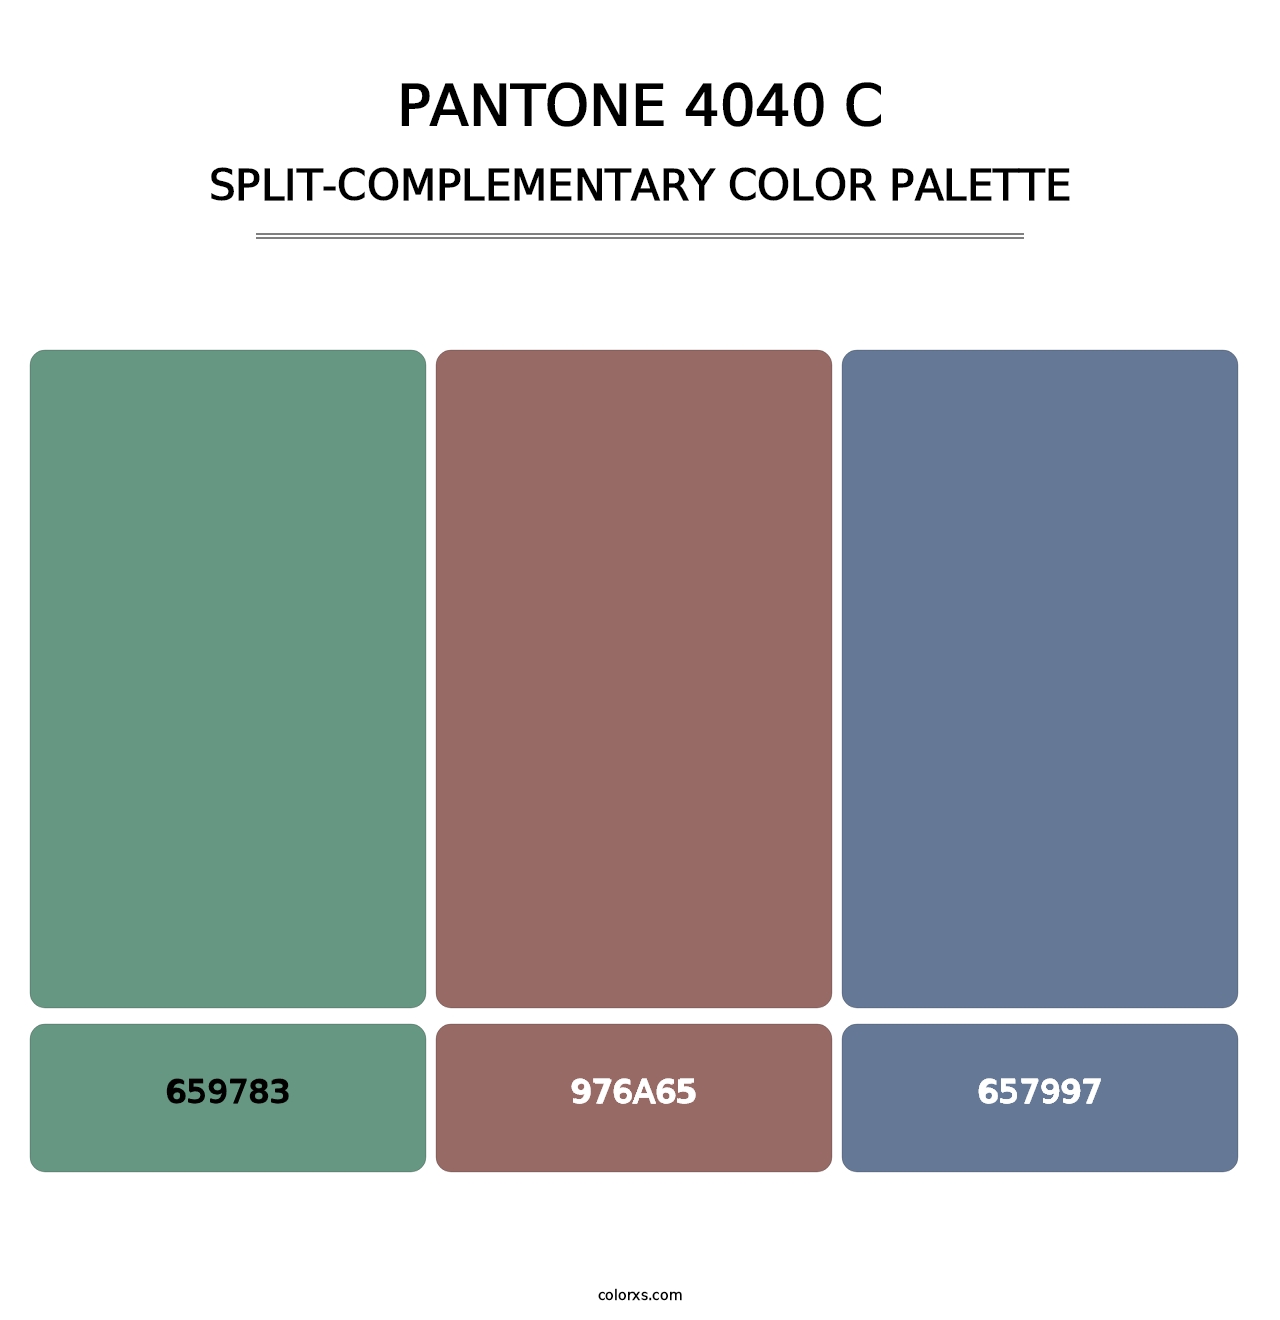 PANTONE 4040 C - Split-Complementary Color Palette